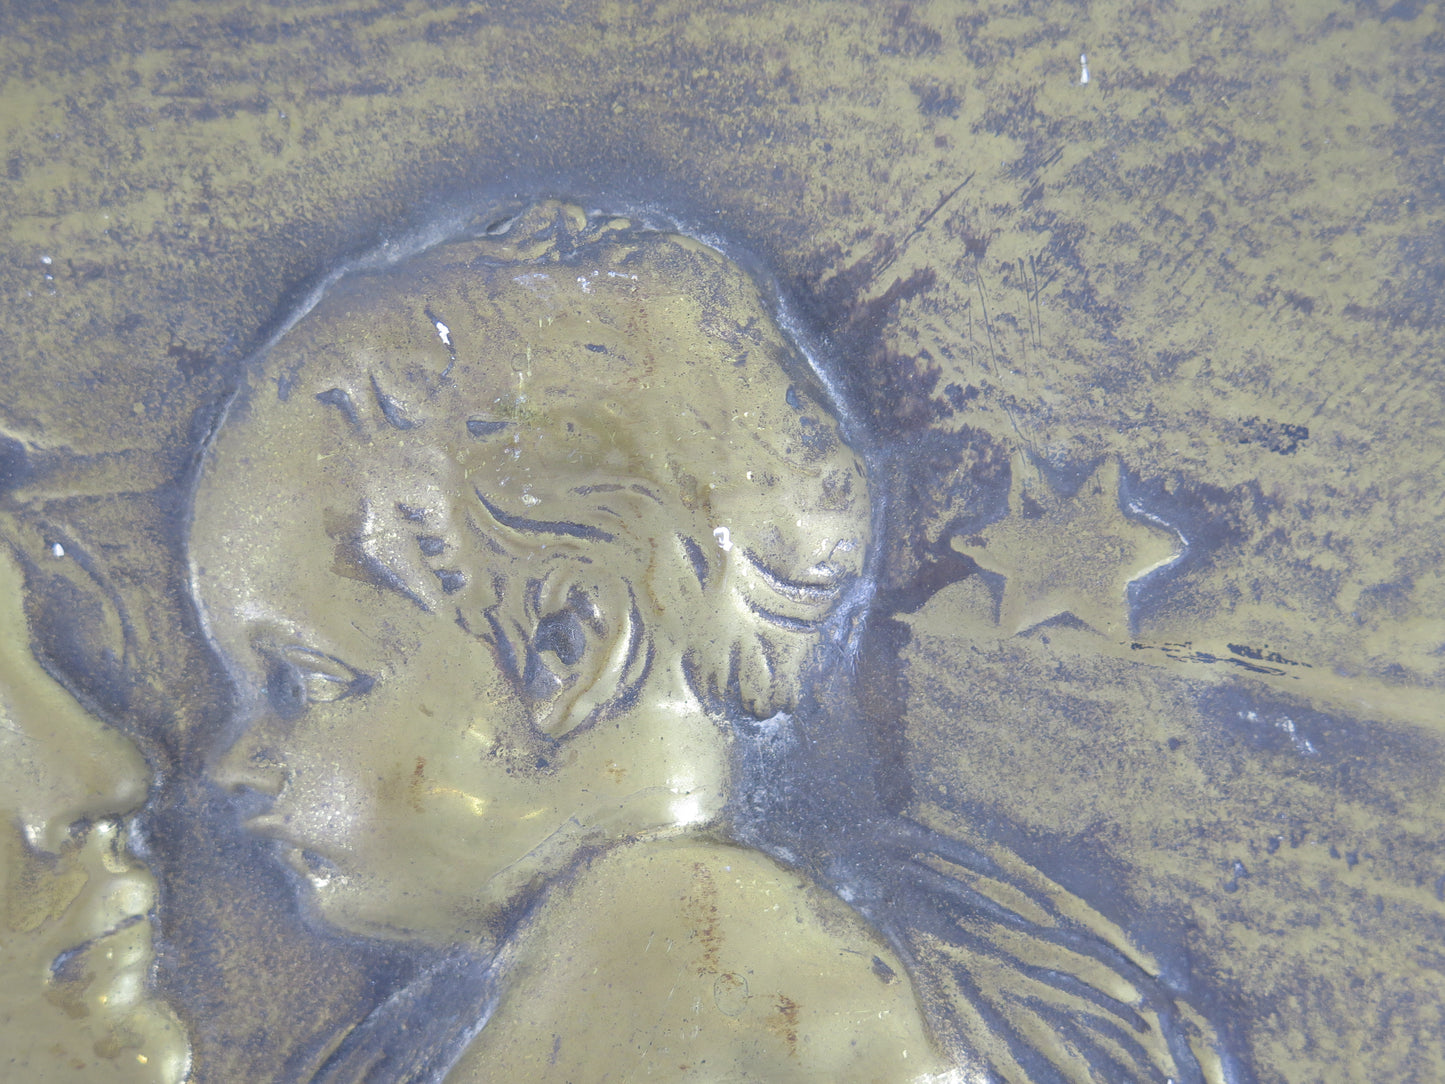 Scultura art nouveau antica bassorilievo placca stile liberty  ritratto mamma con bambino scultura di bronzo da parete X7